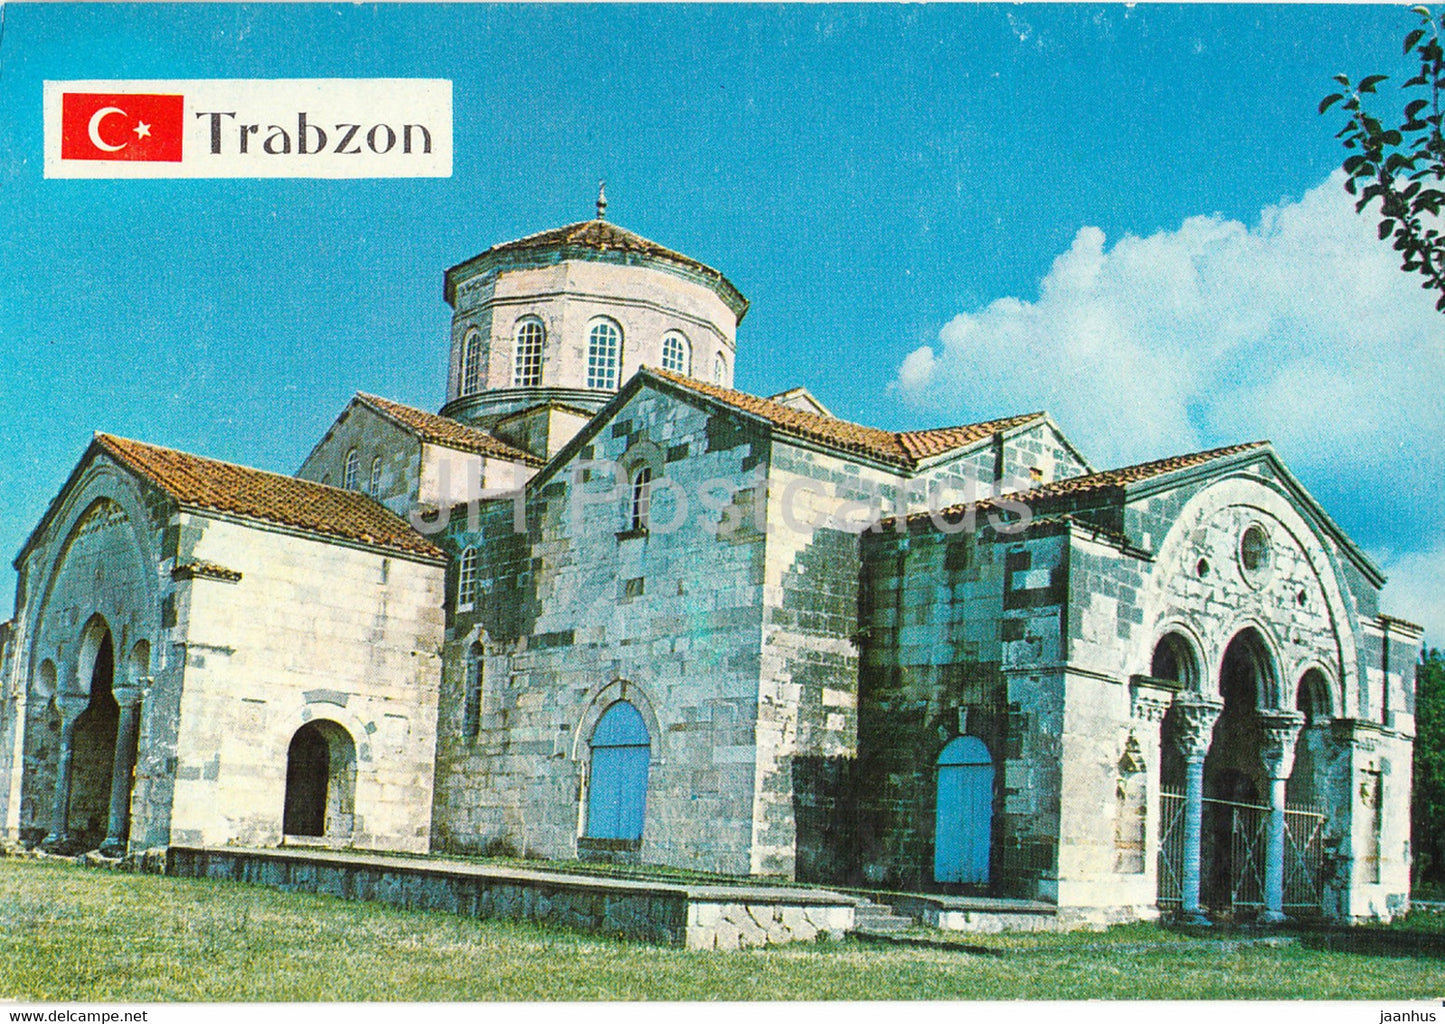 Trabzon - Hagia Sophia - 1987 - Turkey - used - JH Postcards